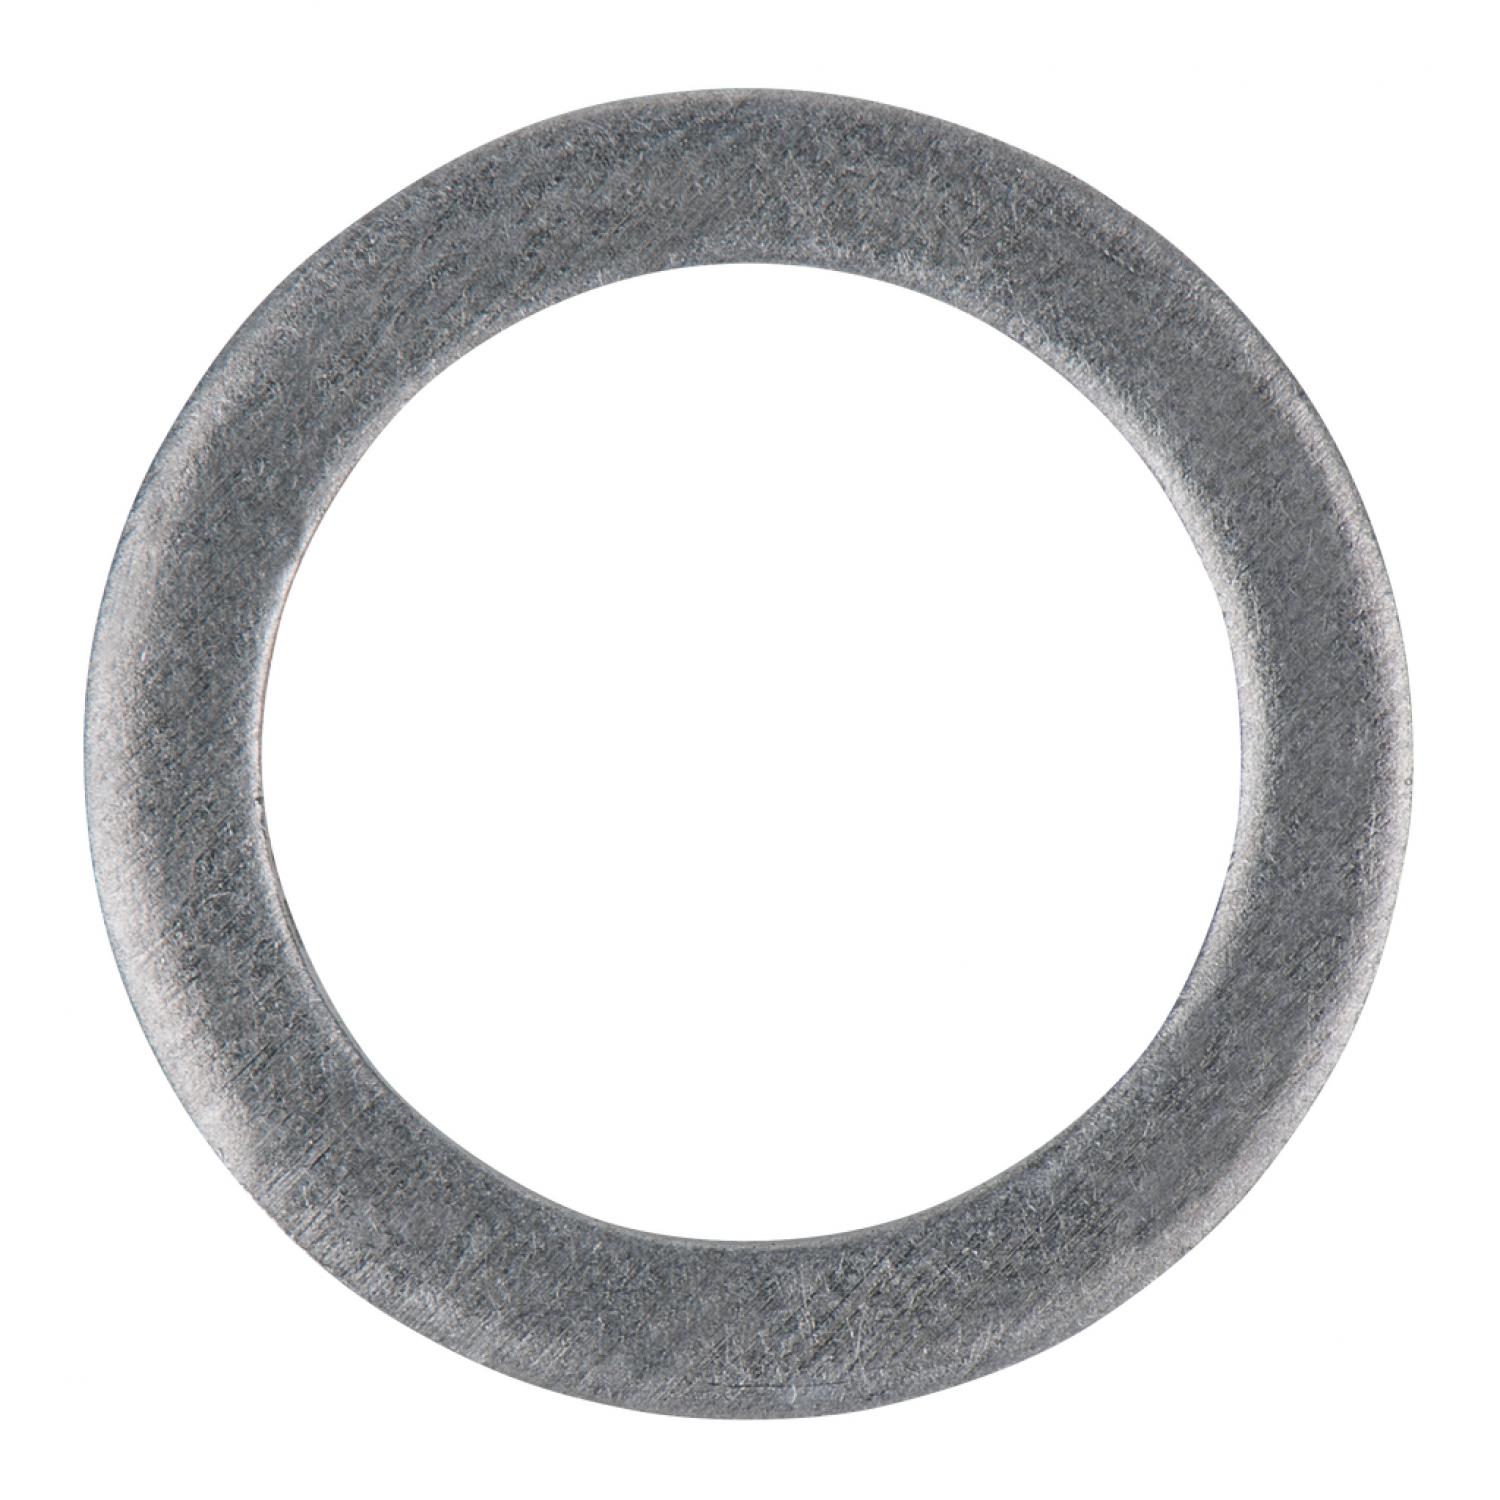 Уплотнительное кольцо, алюминиевое, внешний Ø 27 мм, внутренний Ø 22 мм, 10 шт в упаковке